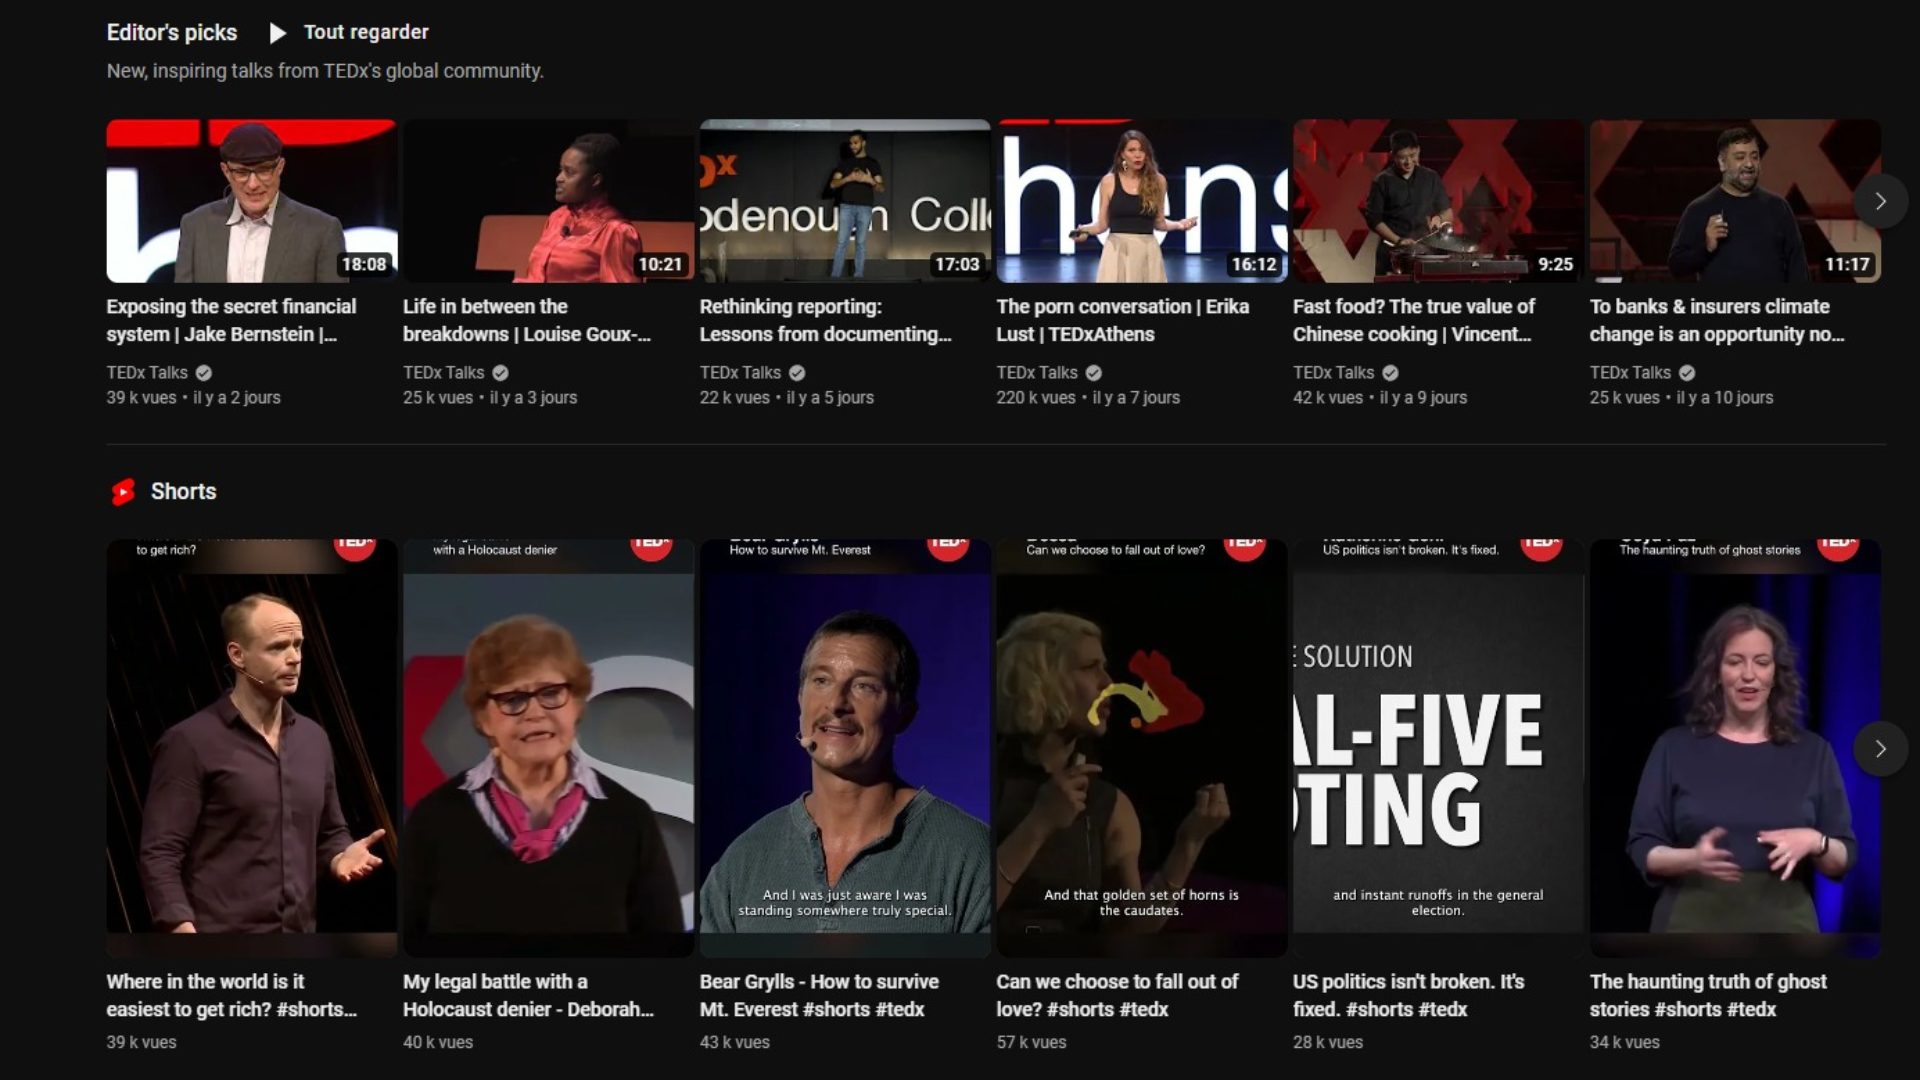 La page YouTube sur laquelle les conférences de TEDxLaChauxdeFonds seront publiées possède 37 mios d’abonnés. (capture d’écran YouTube)